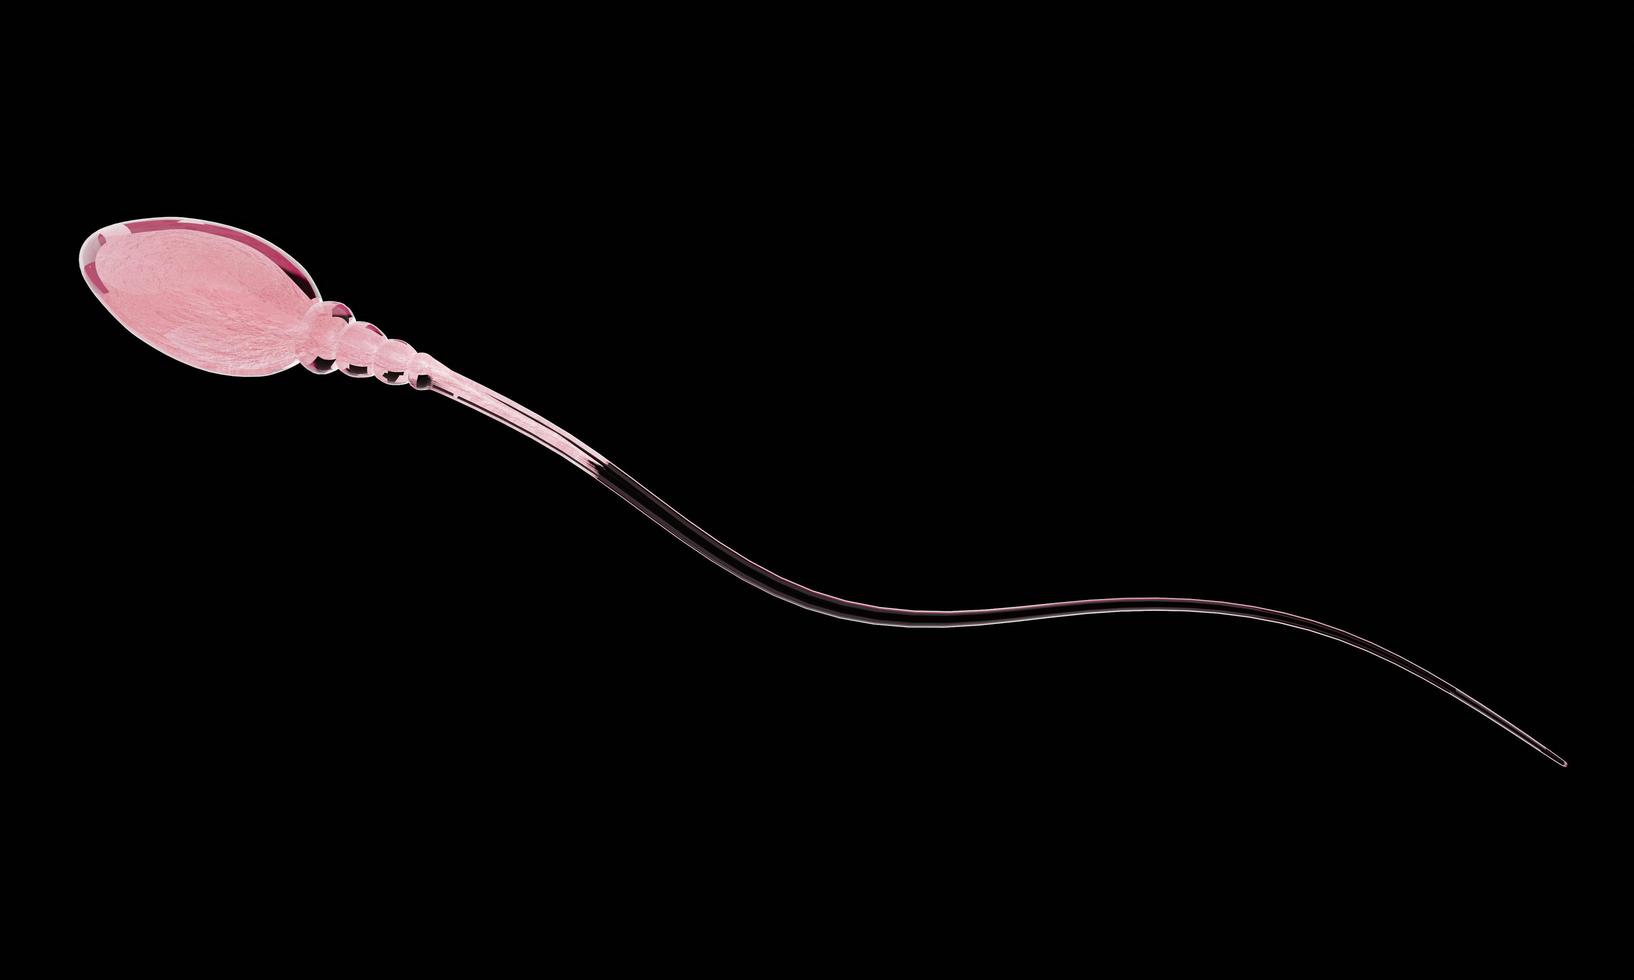 close up simula espermatozoides para reprodução humana sua cabeça é esbelta, oval e tem cauda longa, pele clara, núcleo visível. renderização em 3D foto